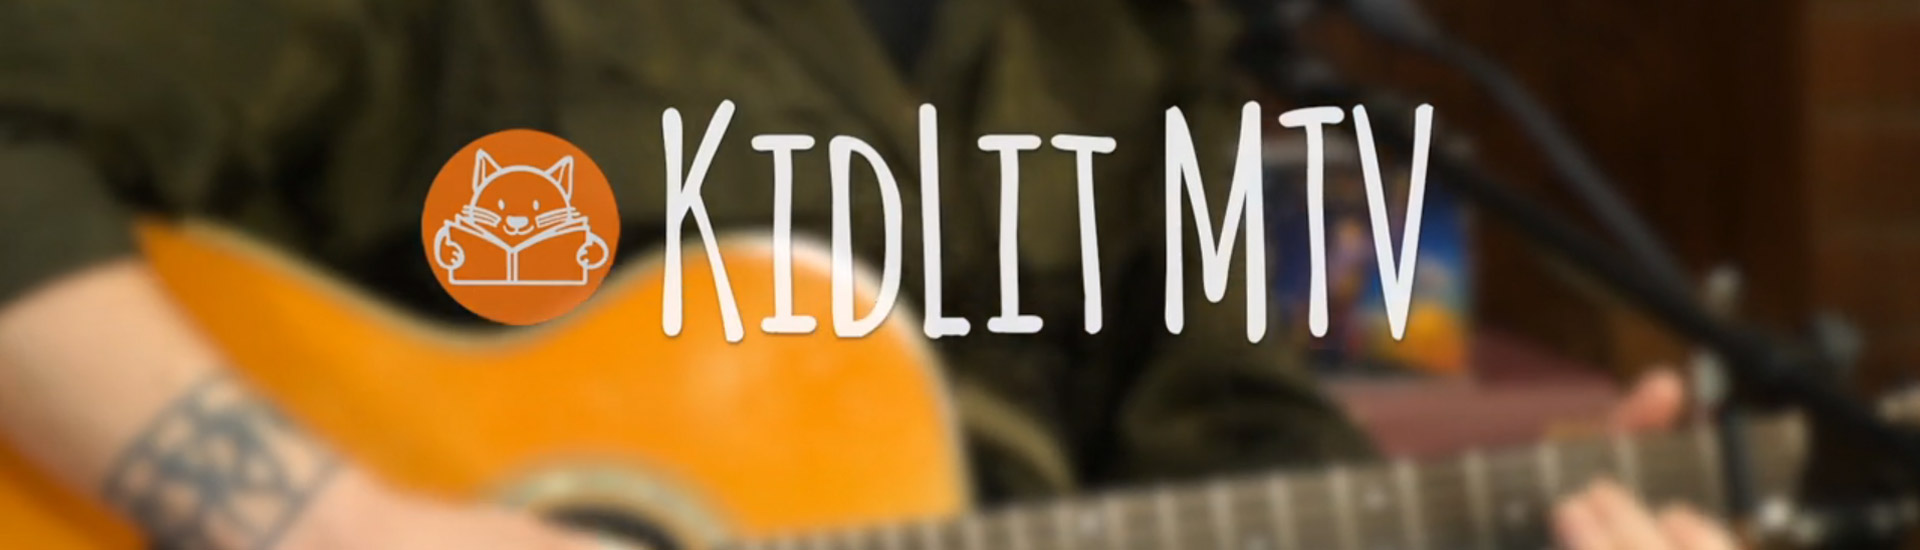 KidLit MTV